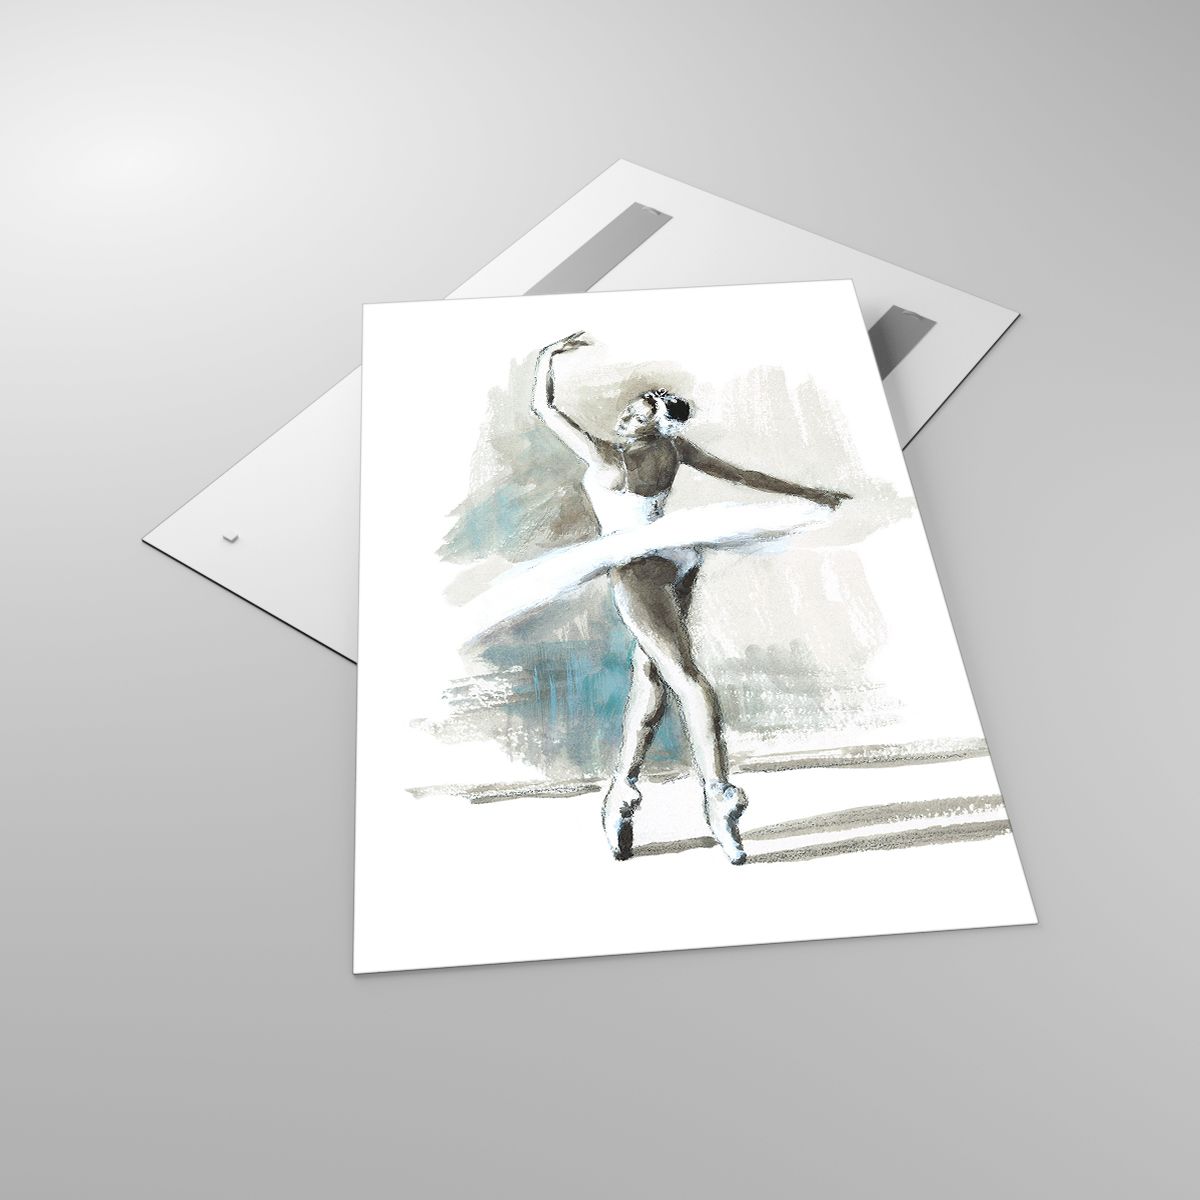 Glasbild Ballerina, Glasbild Tanzen, Glasbild Ballett, Glasbild Grafik, Glasbild Malerei